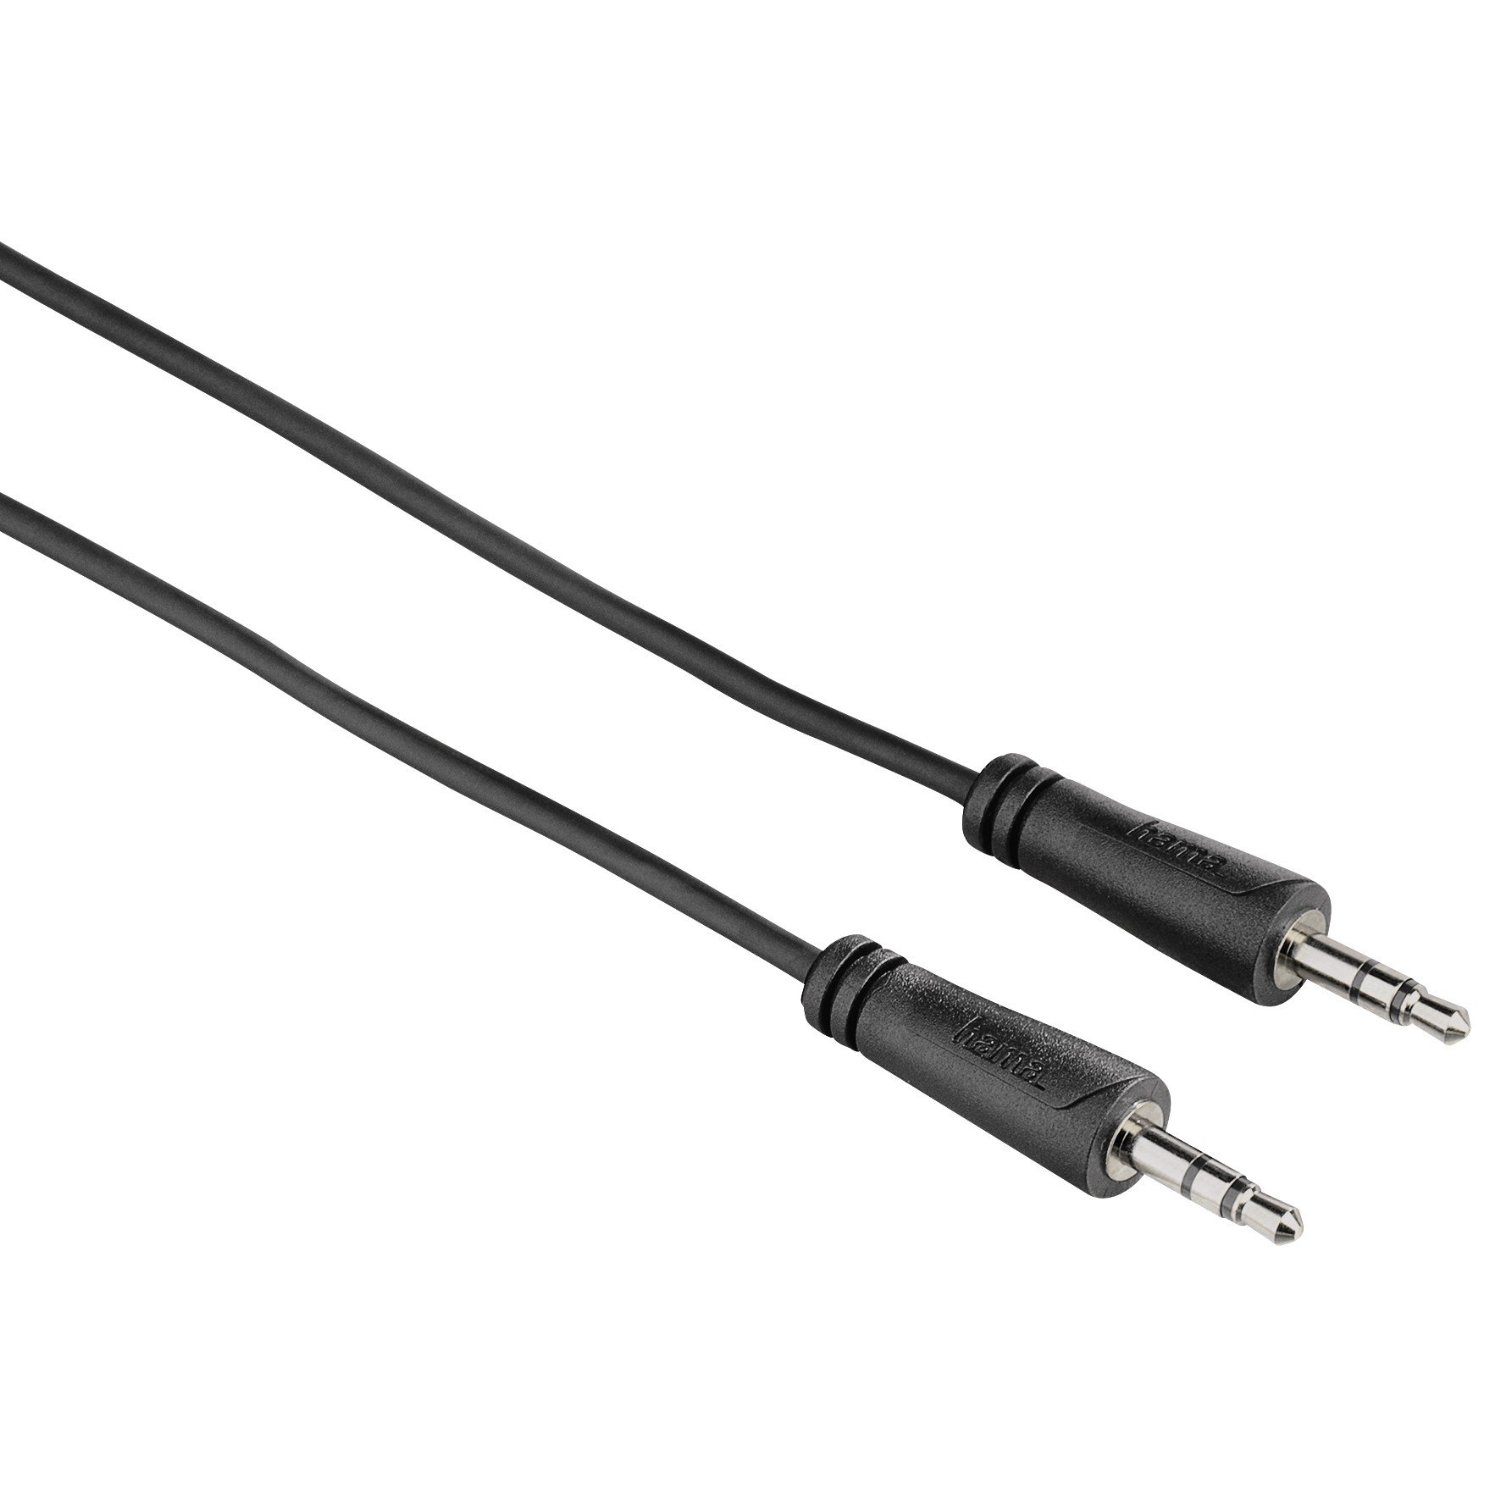 Cablu Hama 122309, 2X 3.5mm Jack plug, 3m